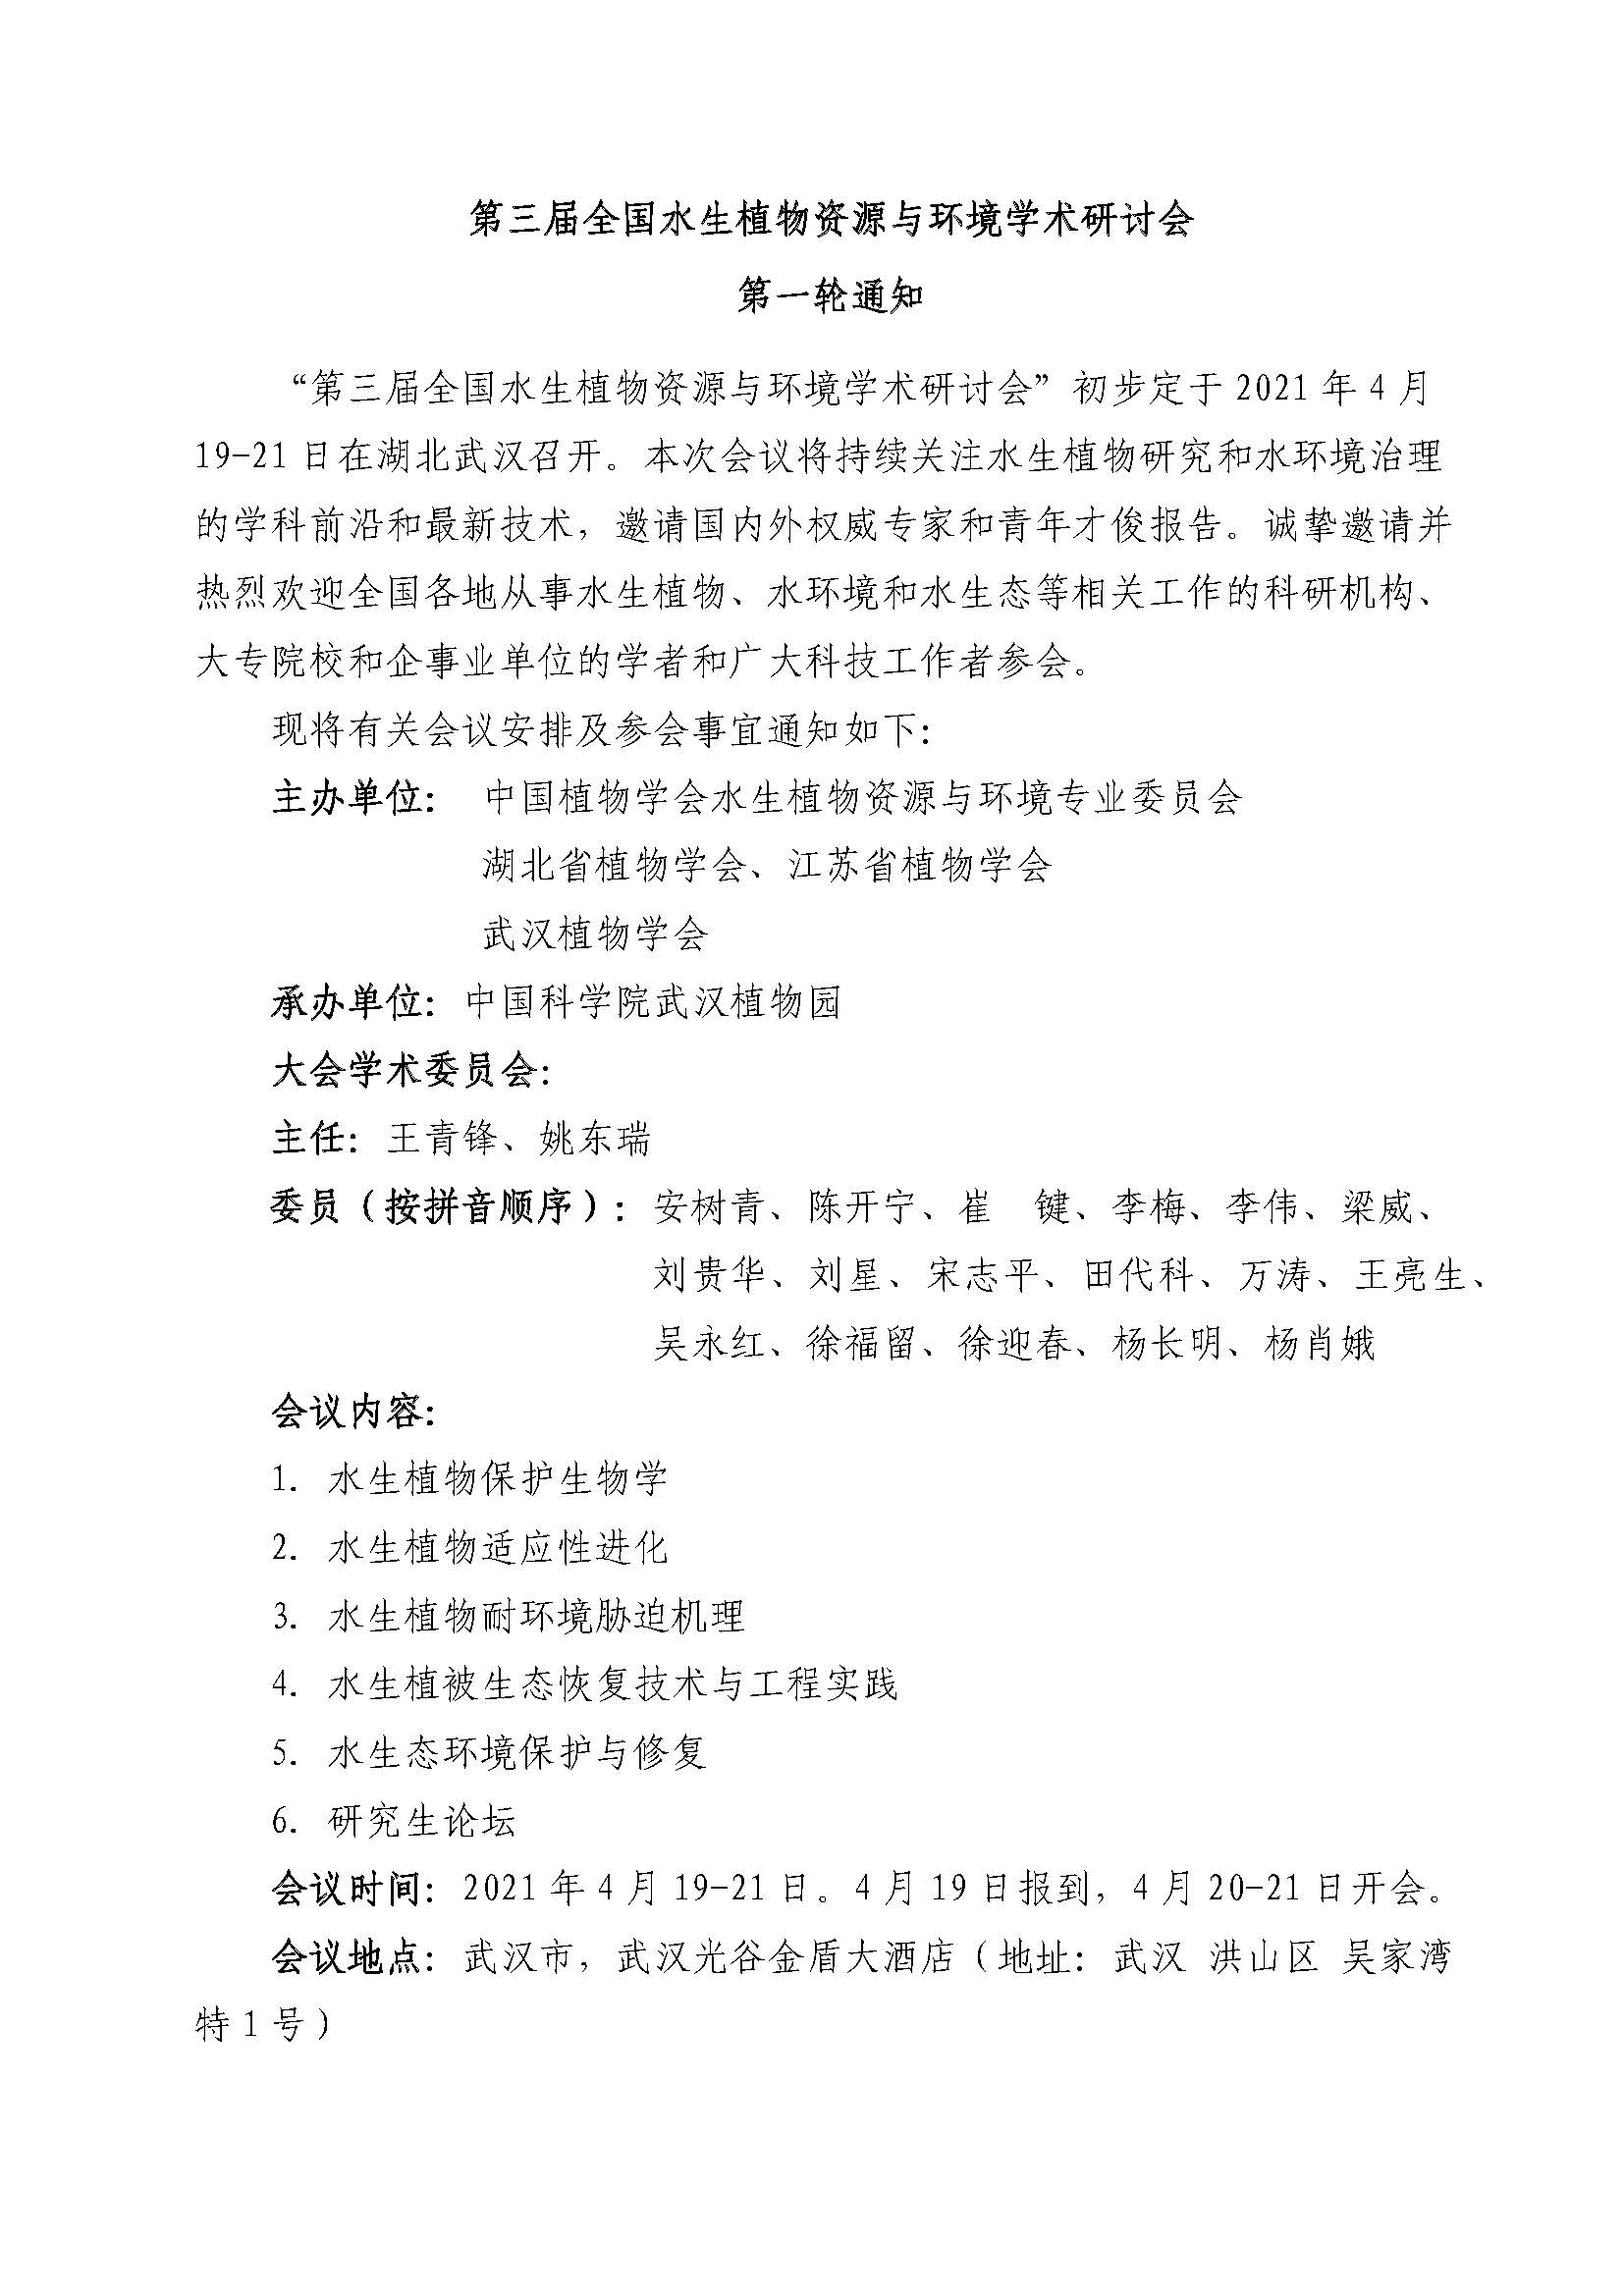 2021年武汉水生会议第一轮通知12.11(3)_页面_1.jpg